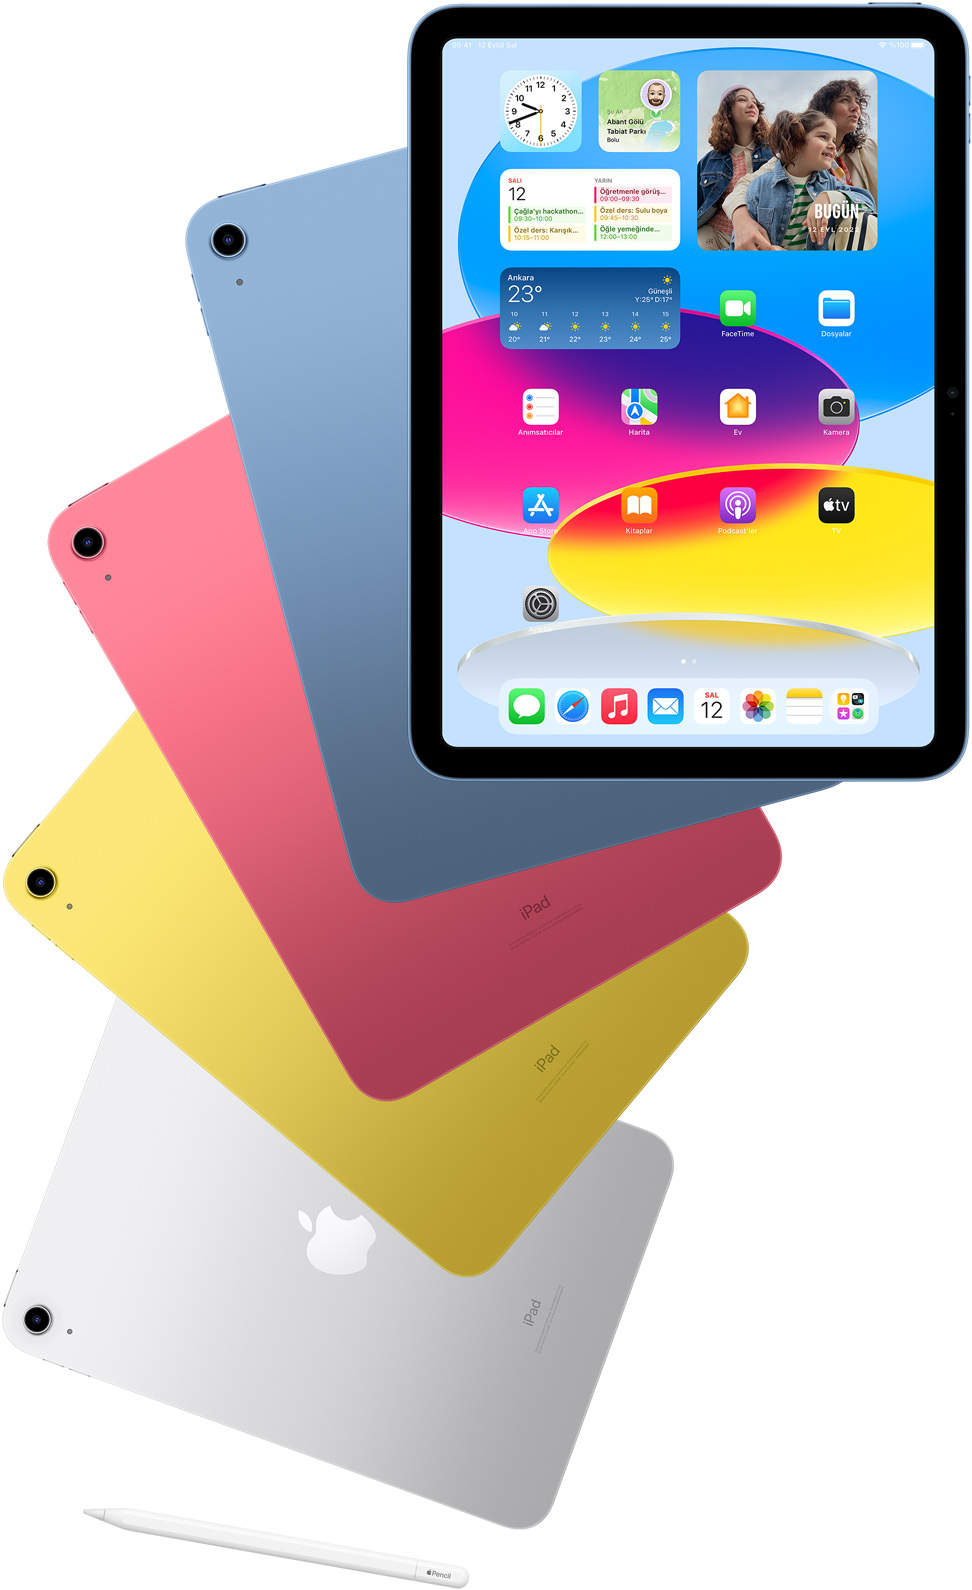 Ön yüzünde ana ekranı görülen bir iPad ve arkasında mavi, pembe, sarı ve gümüş renkli arkası dönük iPad’ler. Dizili iPad modellerinin yanında duran bir Apple Pencil.